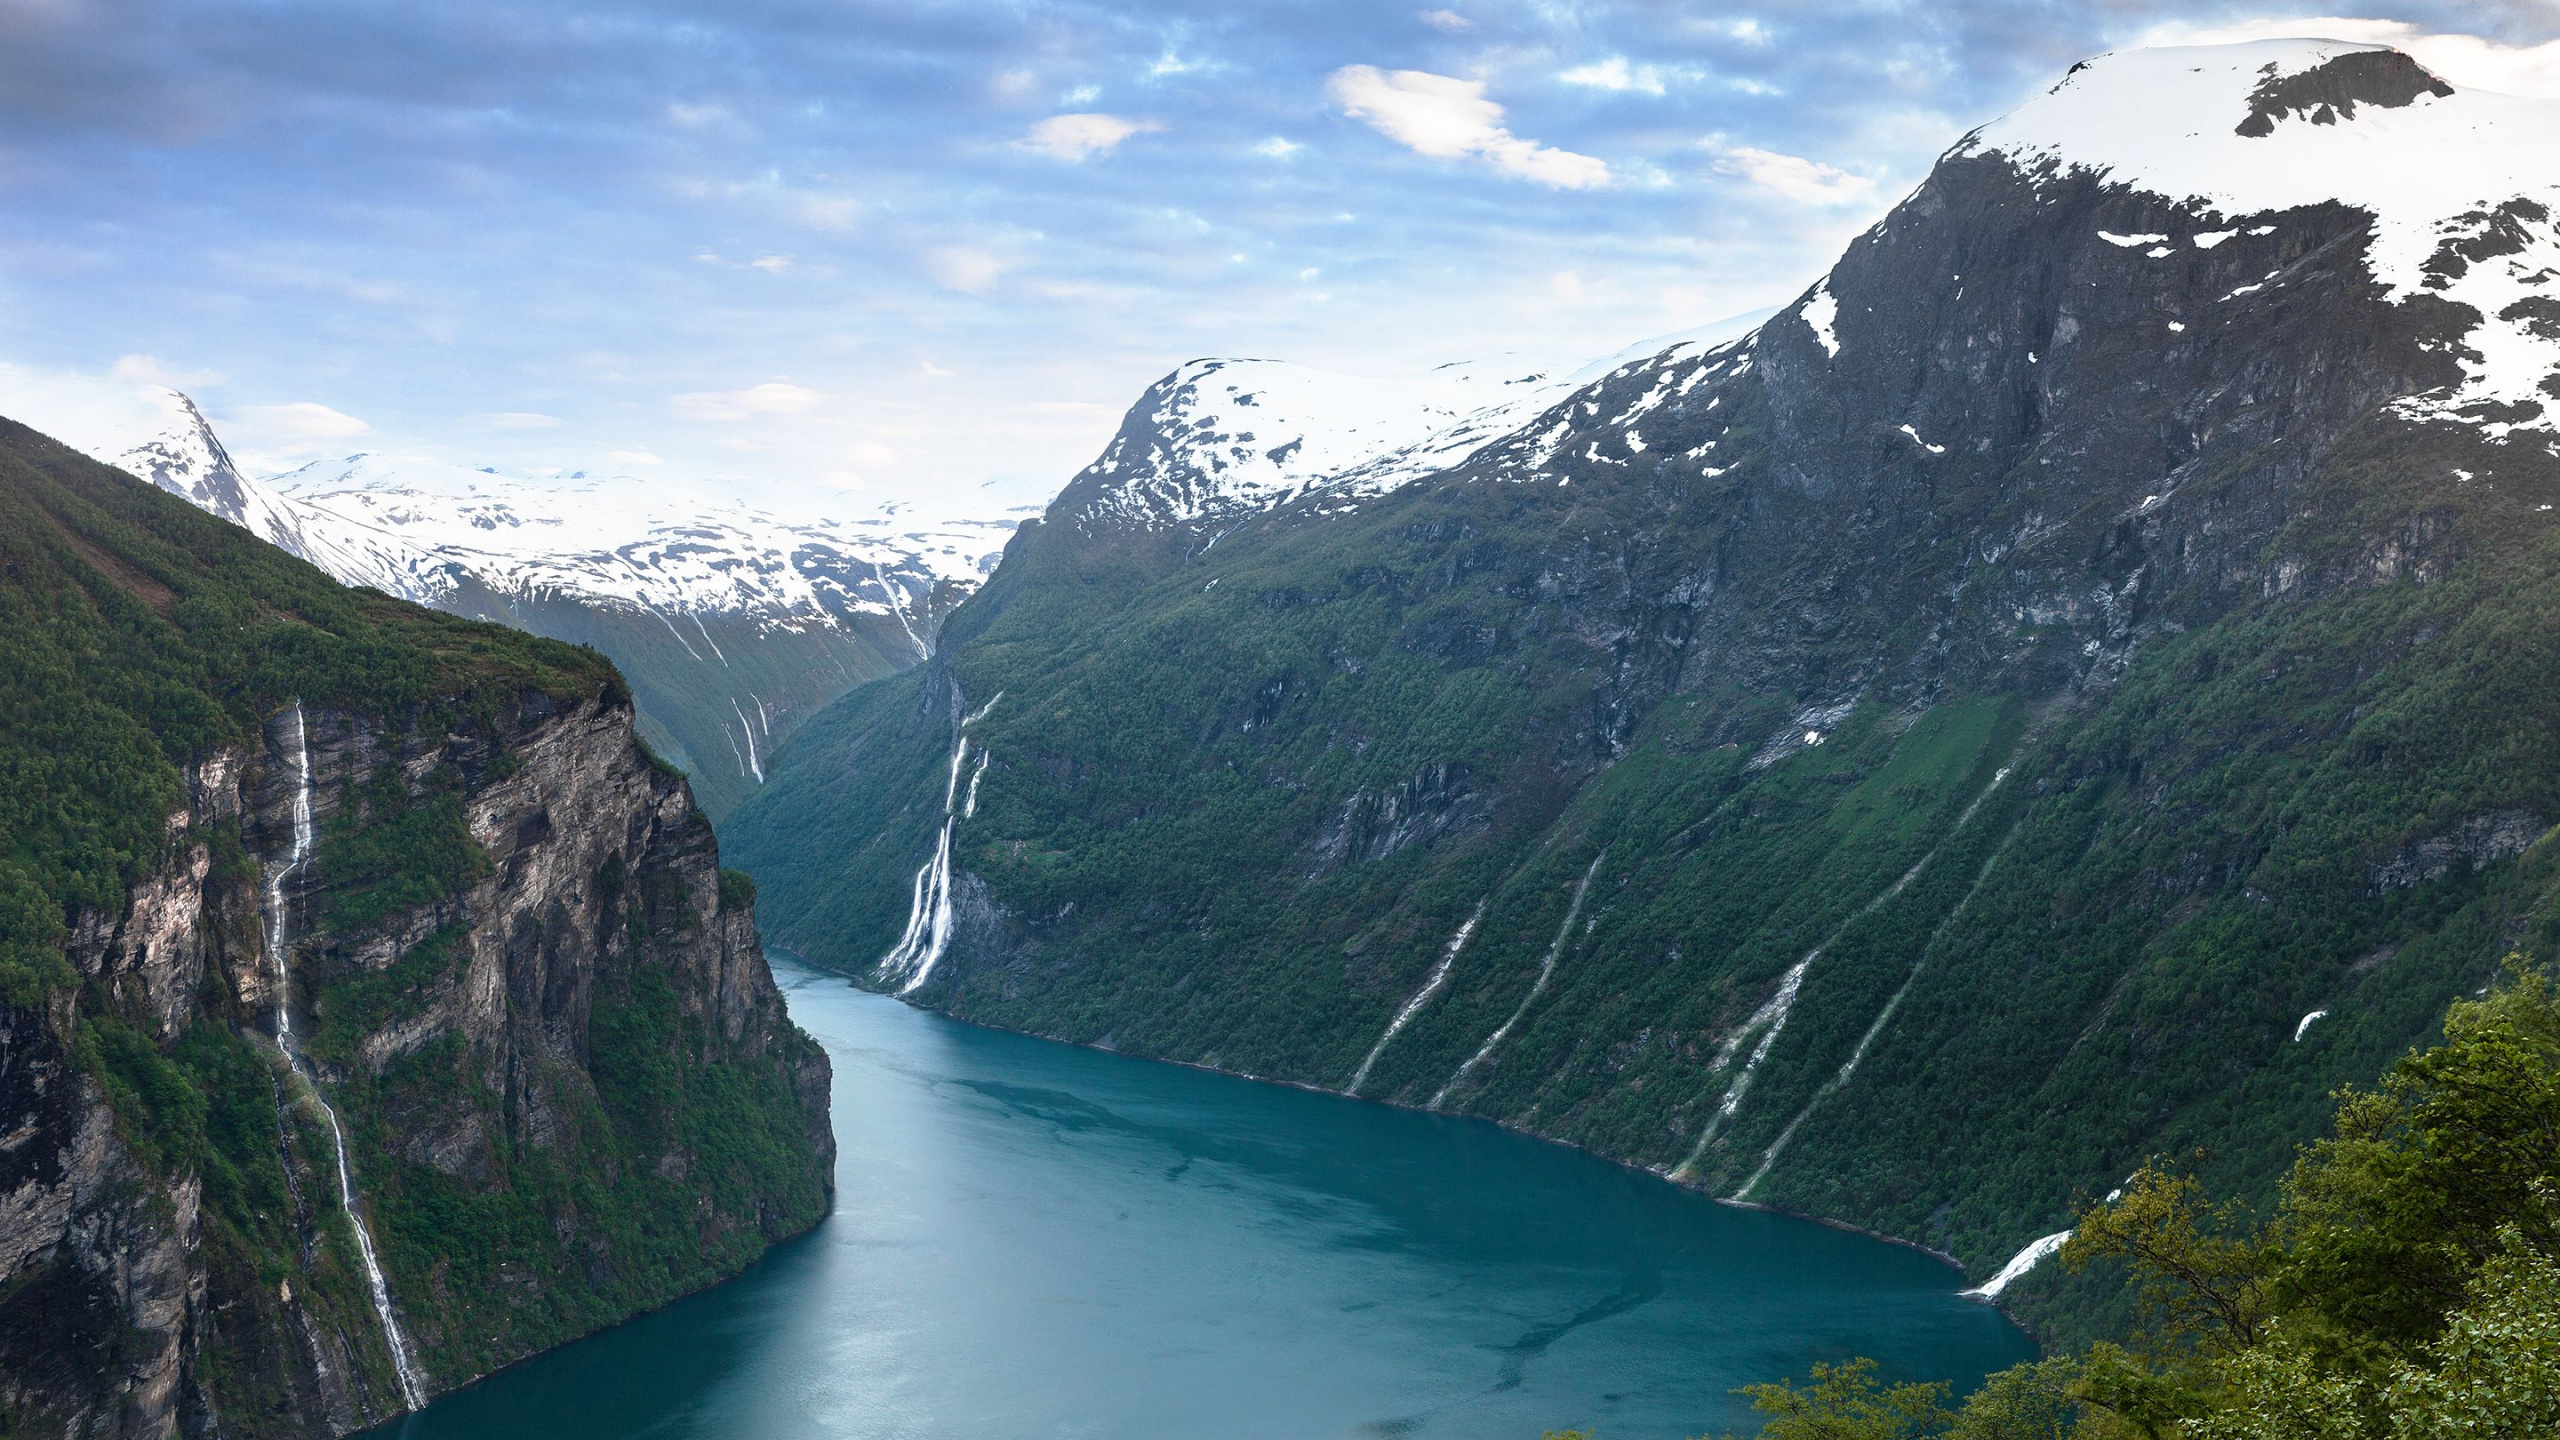 盖伦格, 挪威, 峡湾, 水资源, 高地 壁纸 2560x1440 允许